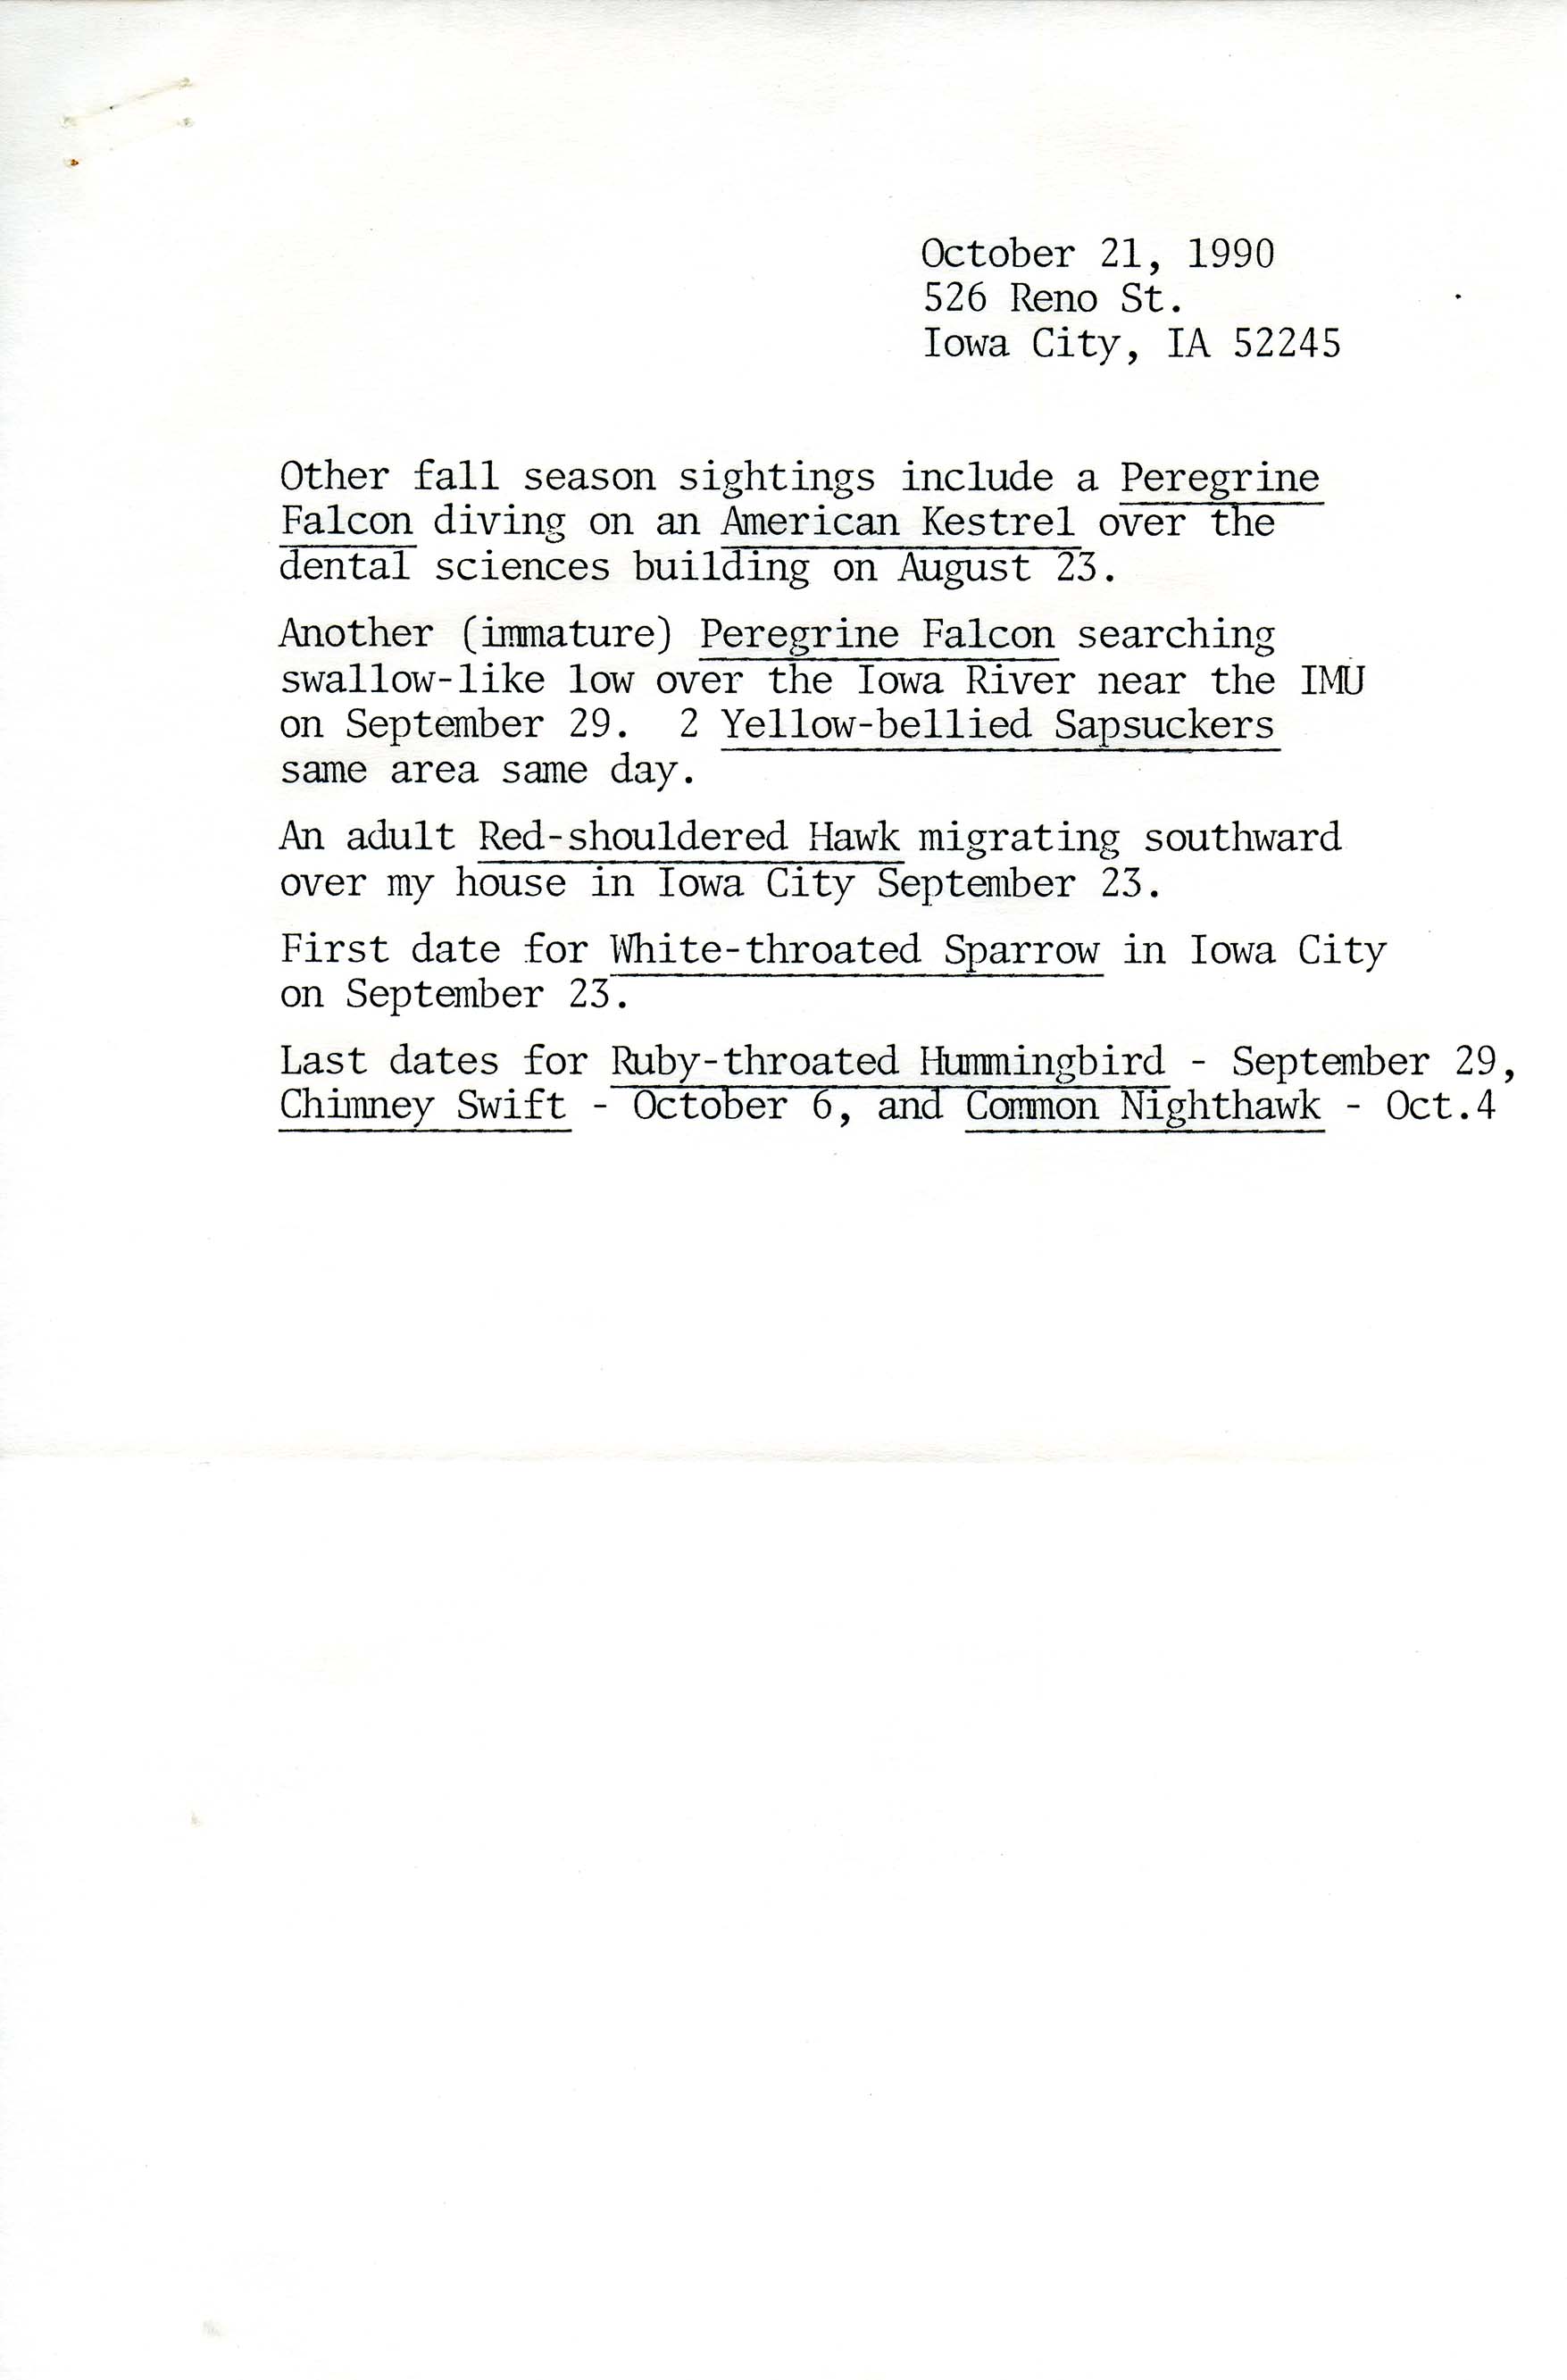 Field reports, Randall Pinkston, fall 1990